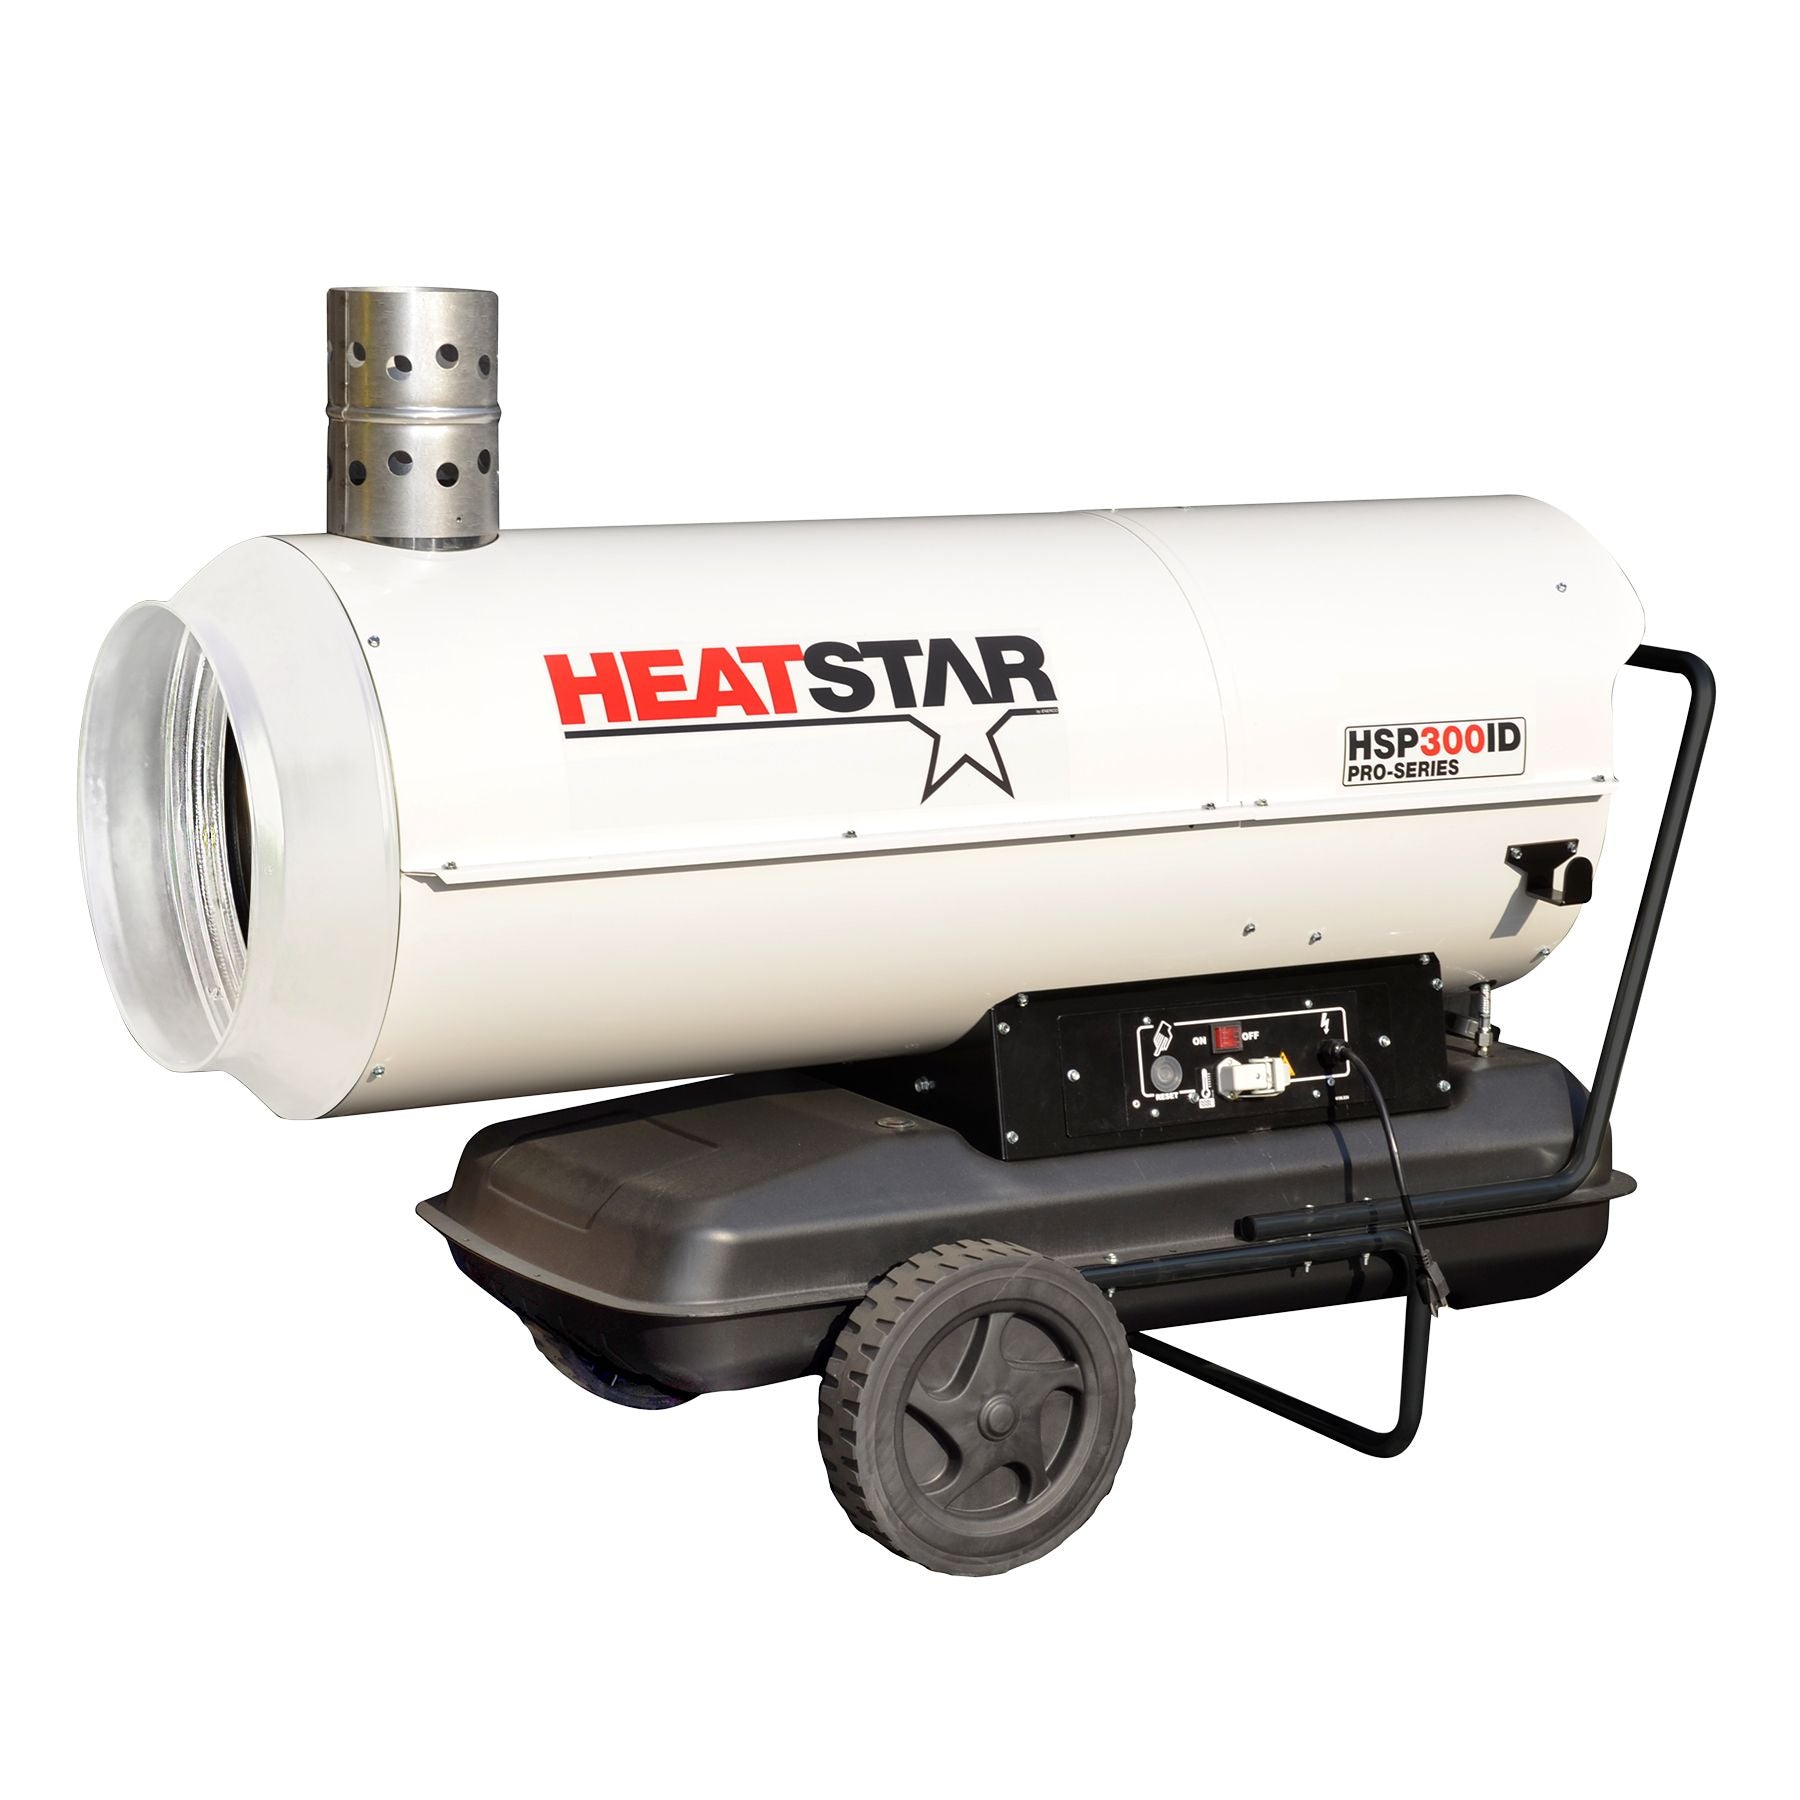 Heatstar Pro-Series Diesel/Oil Indirect Fired Heater - 285,000 BTU/HR